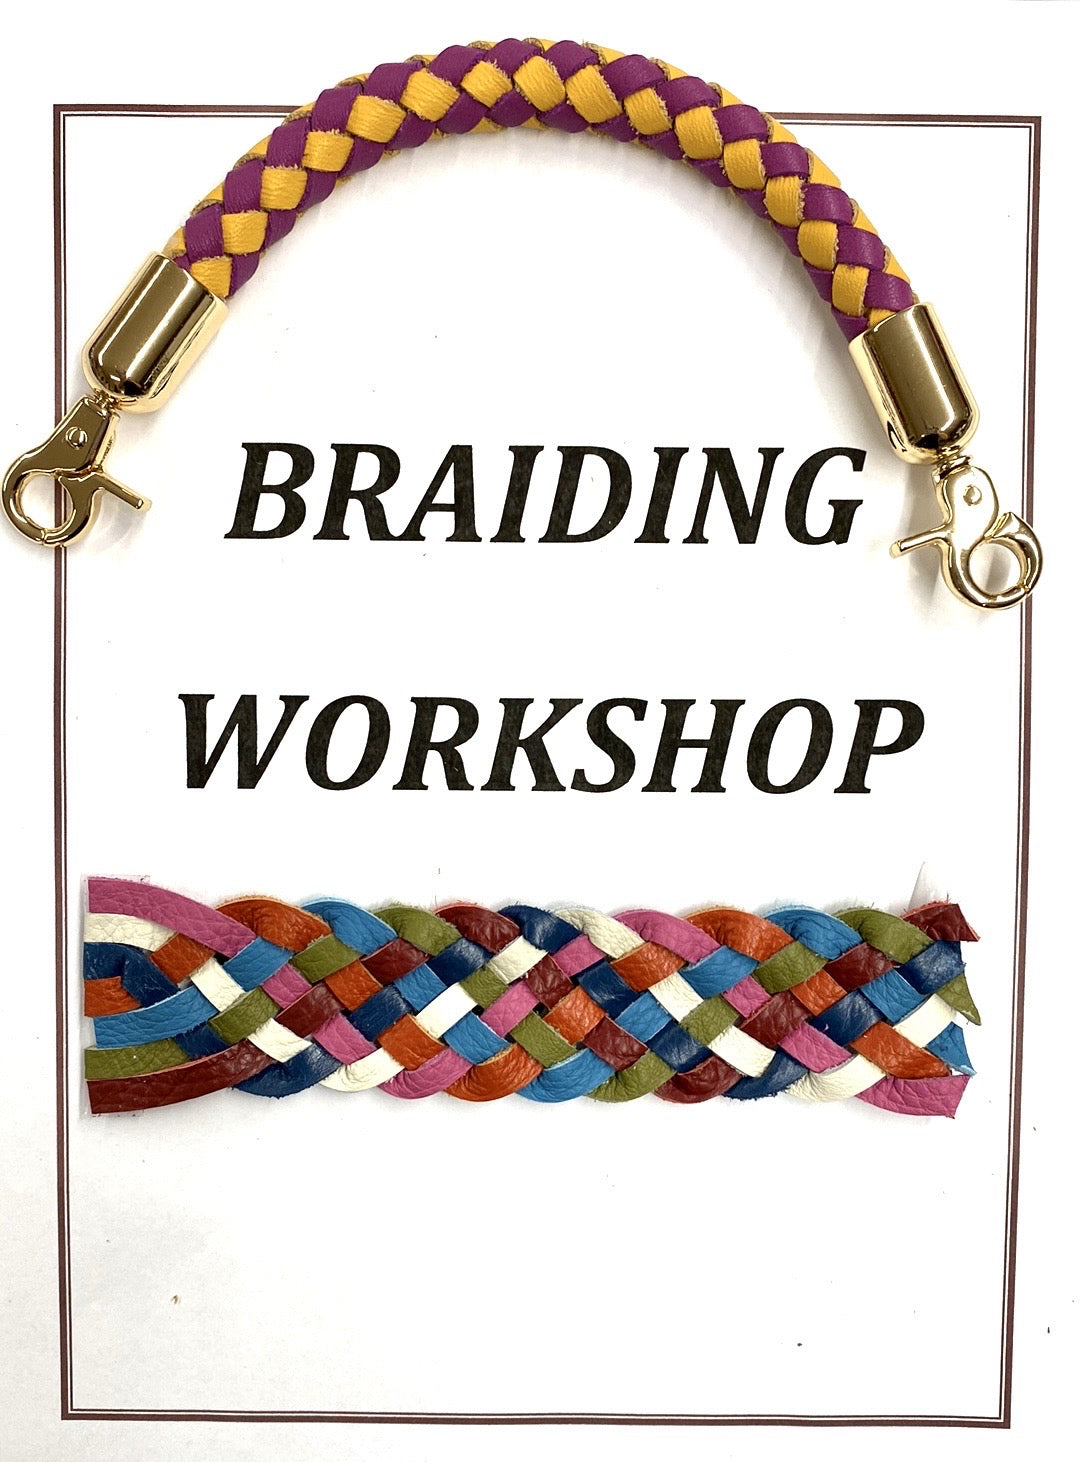 Braiding Techniques Workshop - Session 3